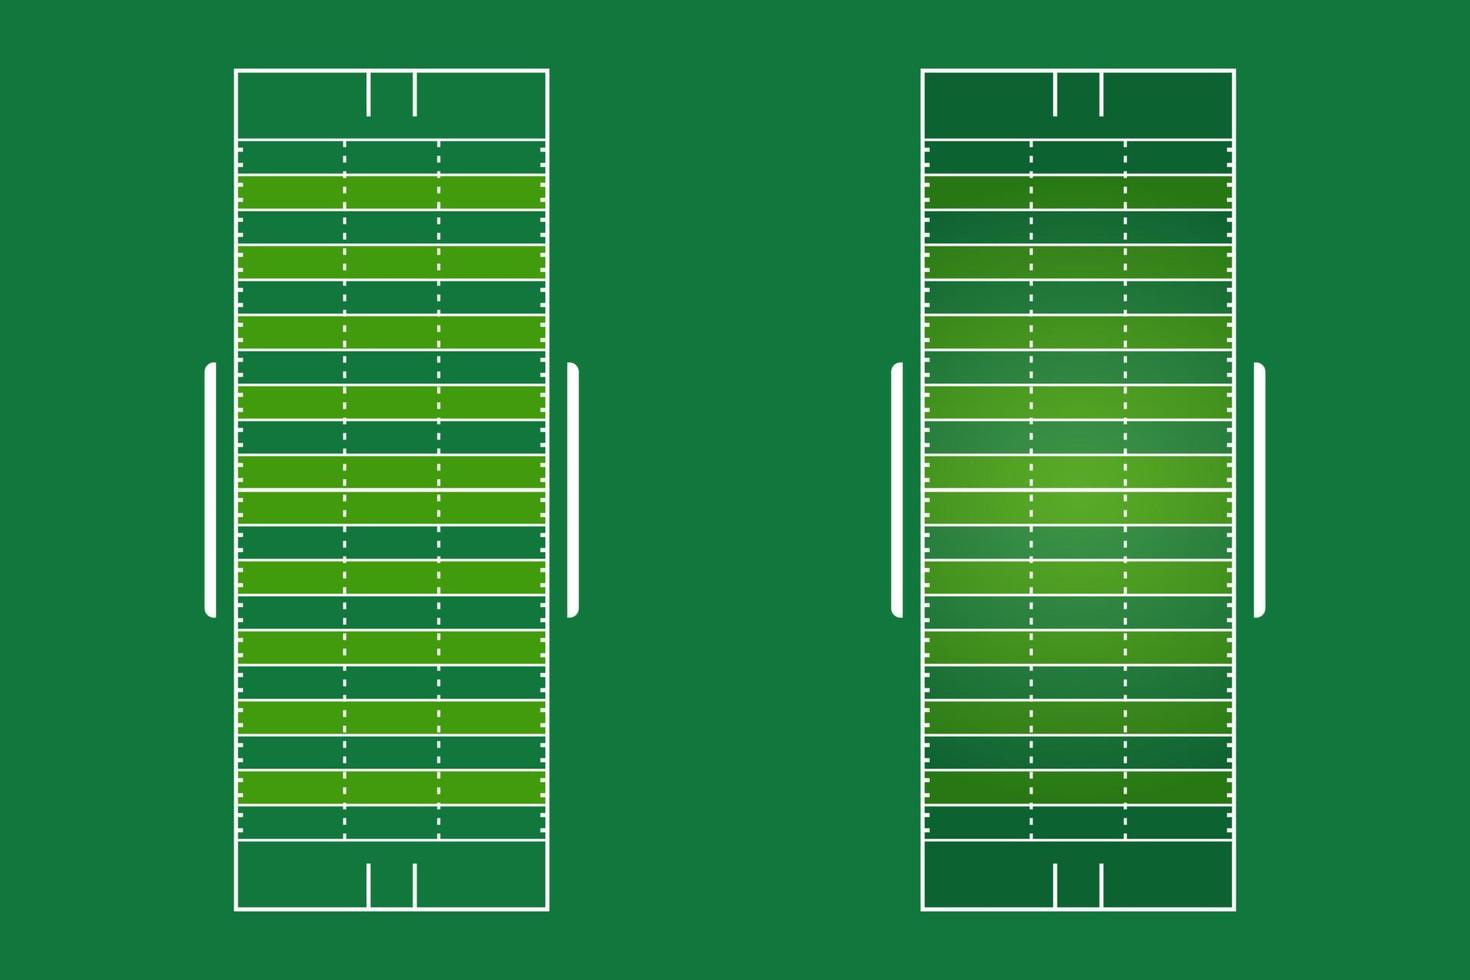 amerikansk fotbollsplan platt design, fotbollsplan grafisk illustration, vektor för amerikansk fotbollsplan och layout.